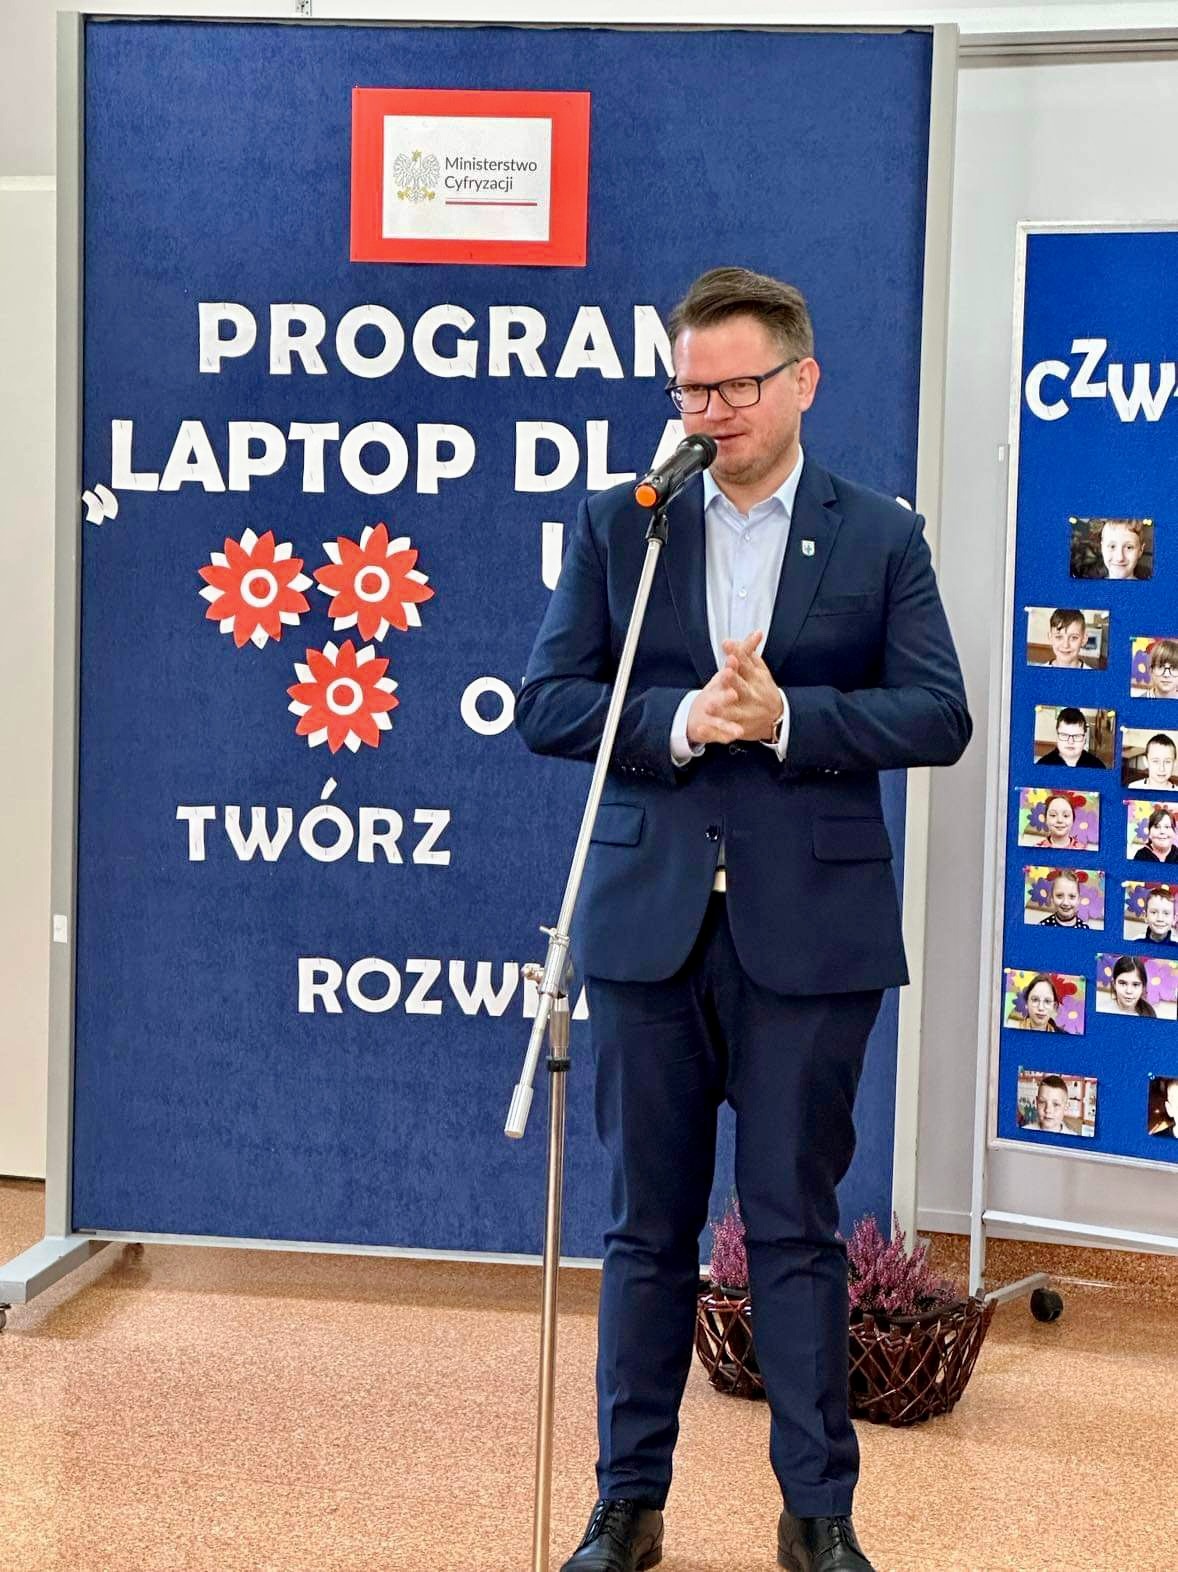 Laptopy dla czwartoklasistów - Obrazek 2